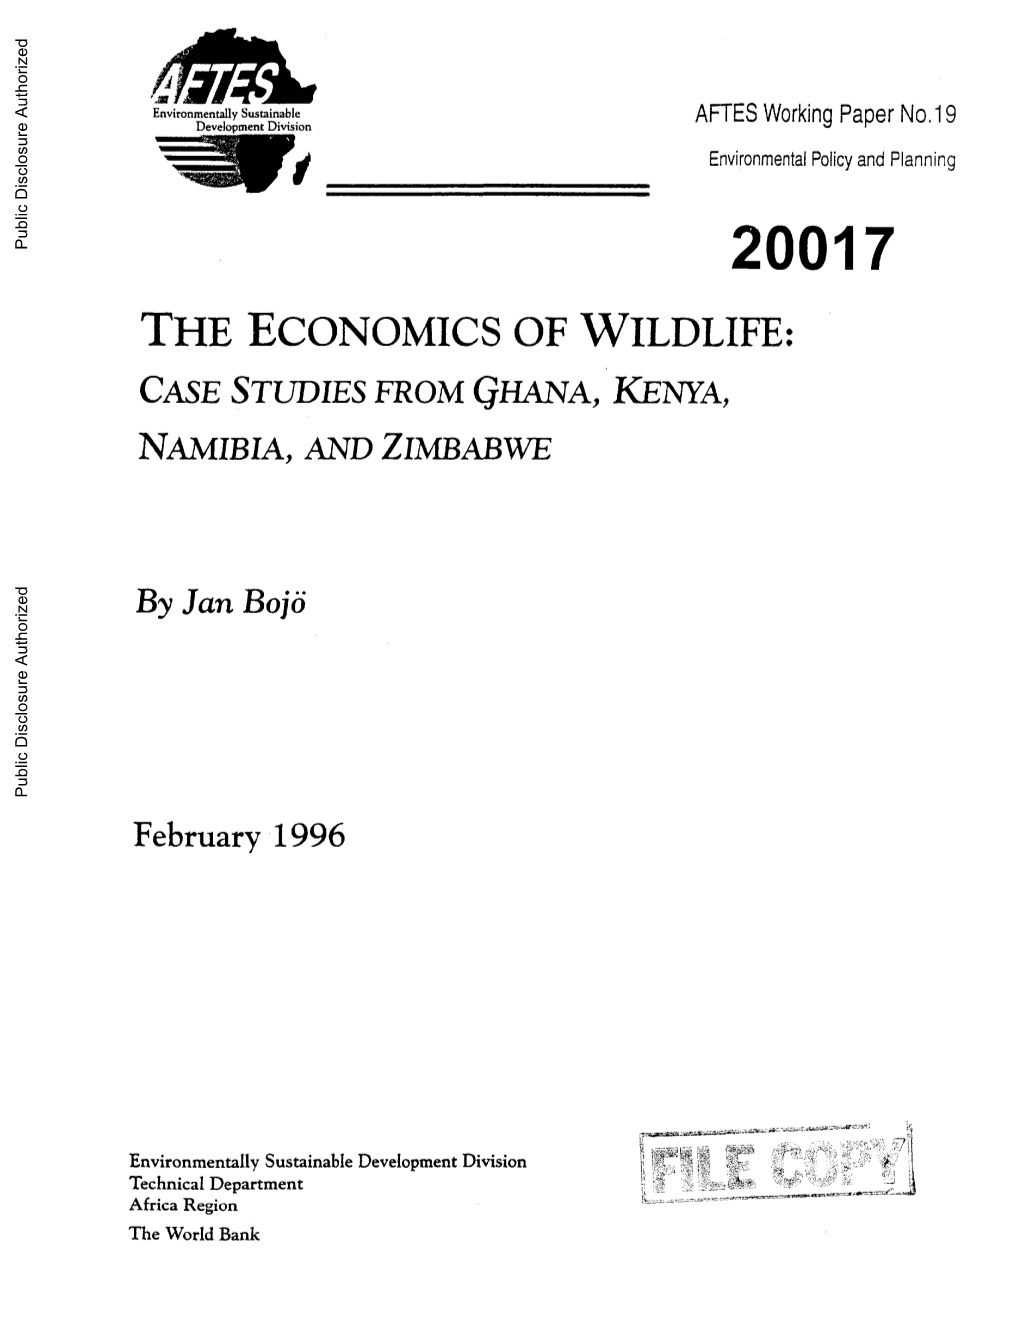 THE ECONOMICS of WILDLIFE: CASE STUDIES from GHANA, KENYA, NAMIBIA, and ZIMBABWE Public Disclosure Authorized